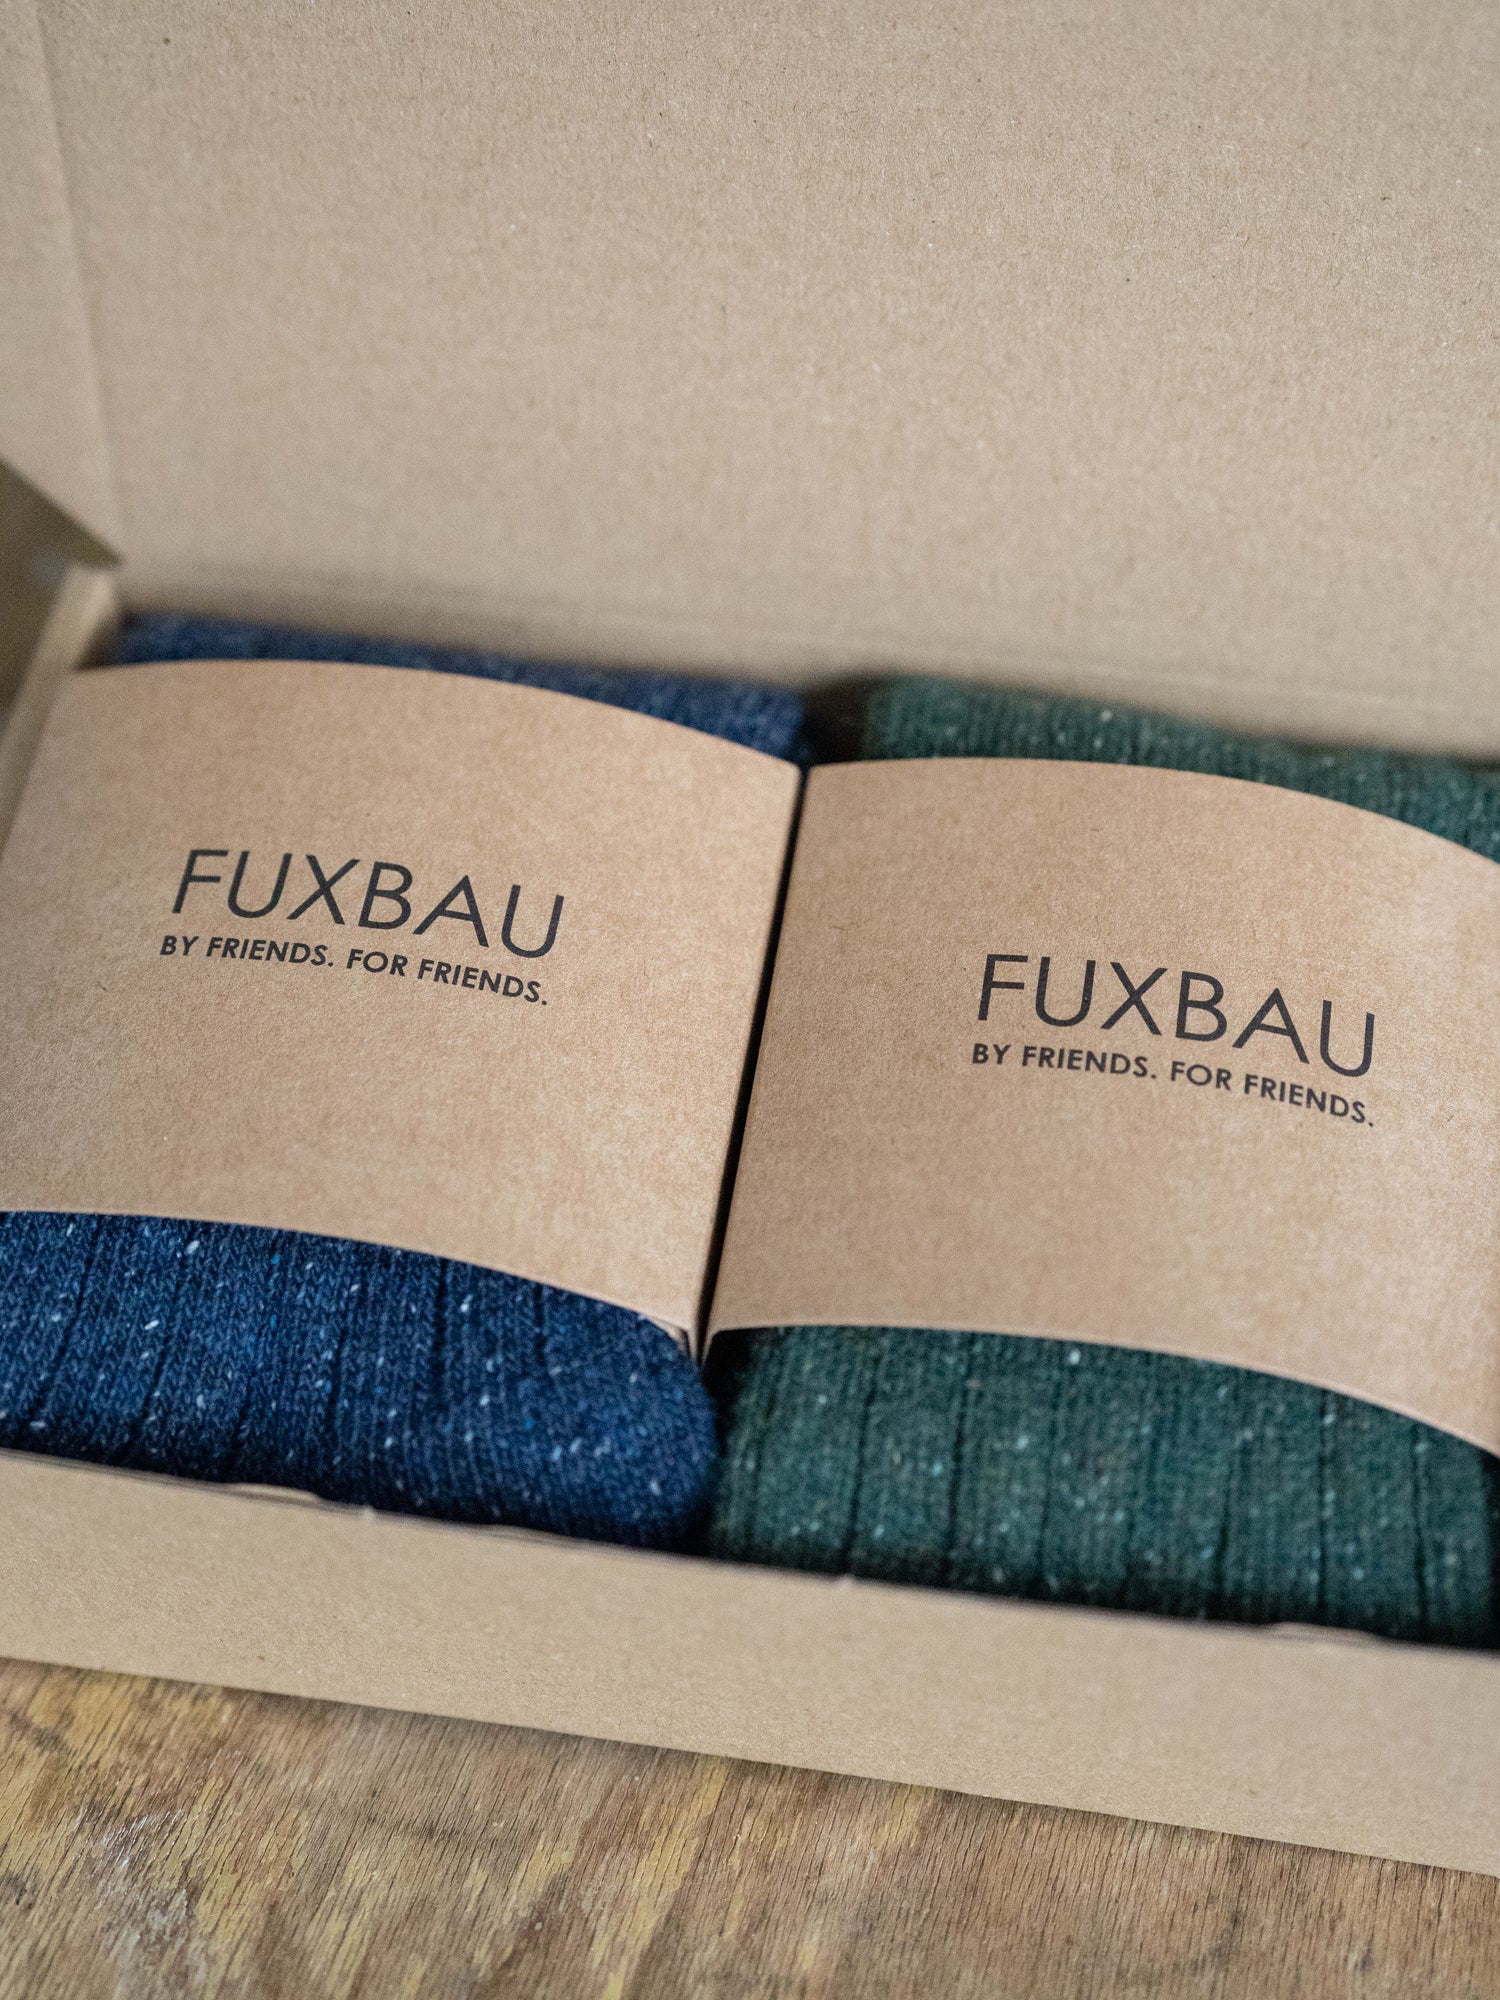 Nachhaltige Fair Fashion Socken in grün und blau mit Neps Punkte im praktischen 2er-Pack, nachhaltig und plastikfrei verpackt.